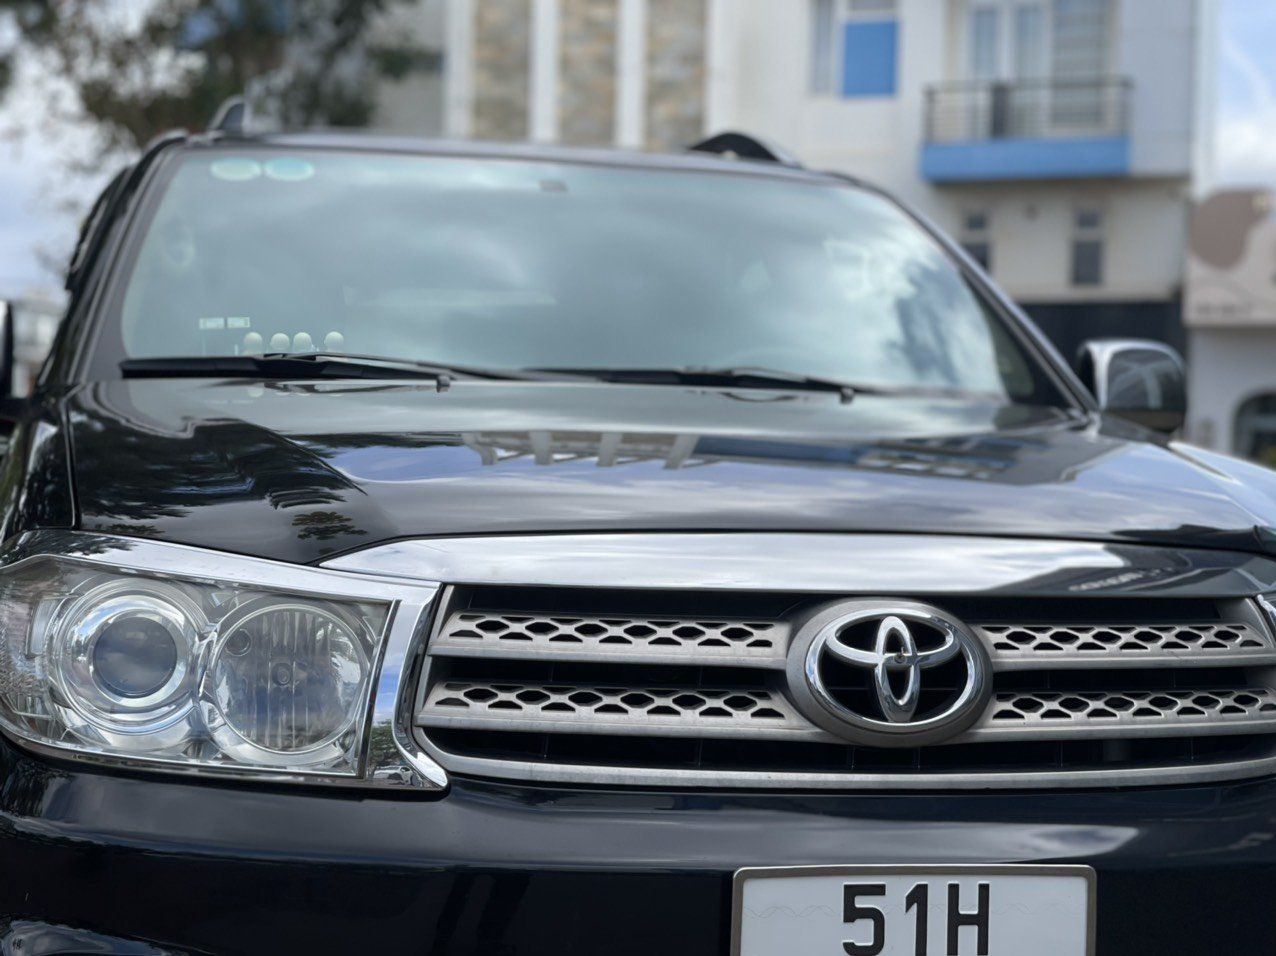 Toyota Fortuner 2011 - Màu đen, giá chỉ 425 triệu